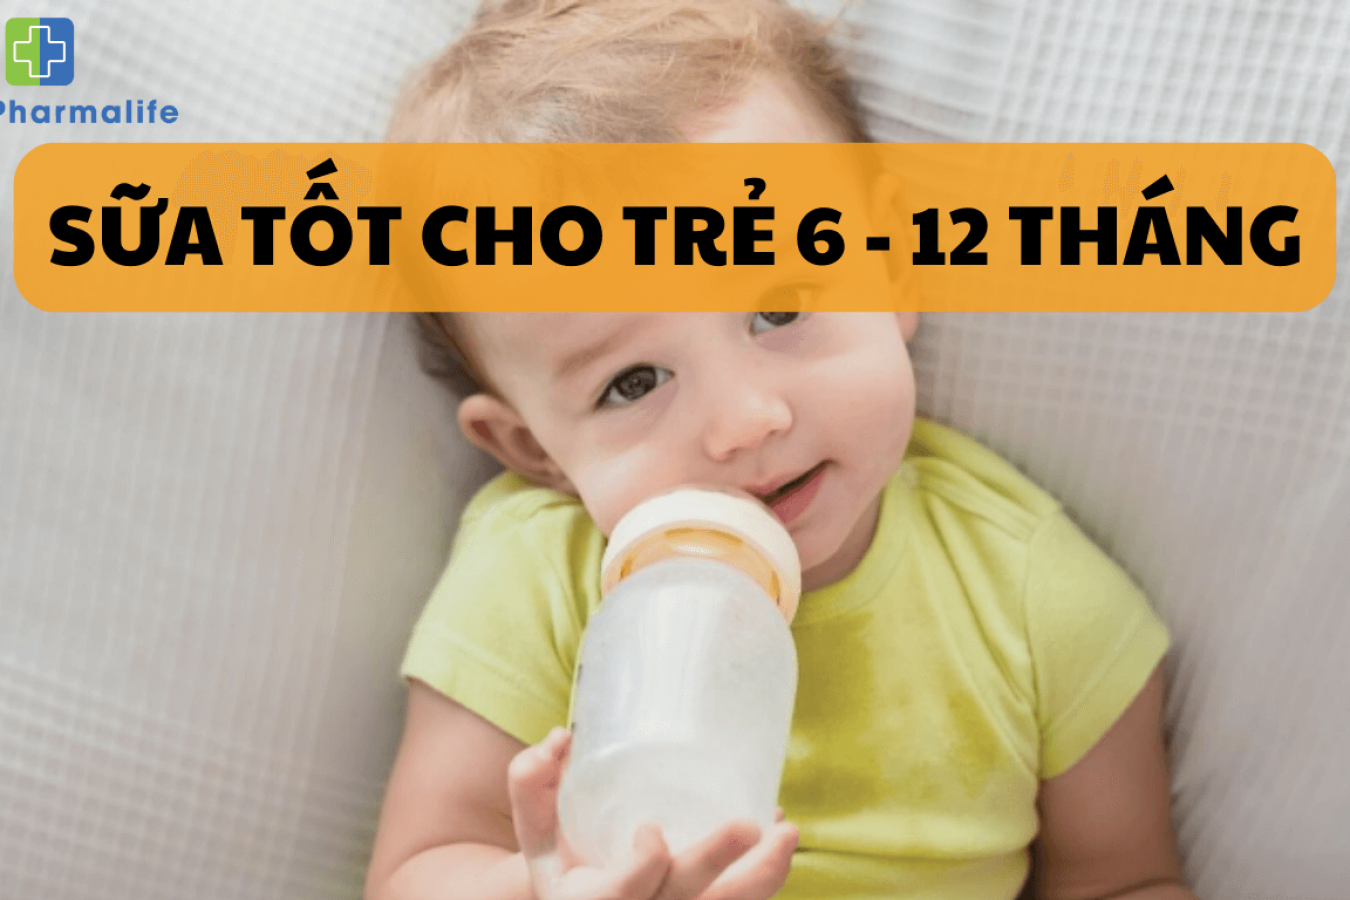 7 loại sữa tốt cho trẻ 6 - 12 tháng giàu dưỡng chất cần thiết